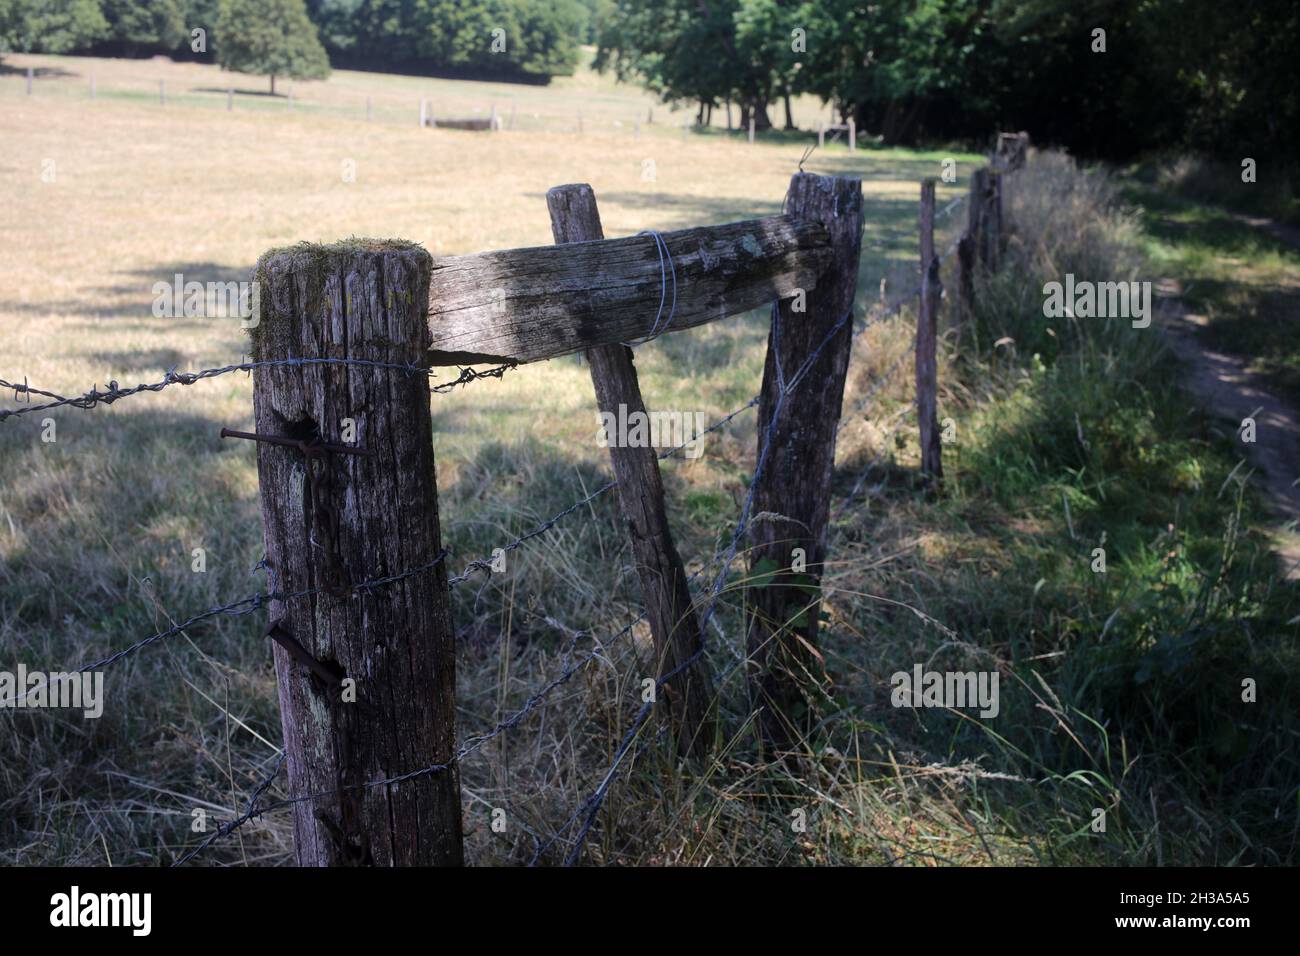 Ancienne clôture en bois - sentier pédestre entre Orly-sur-Morin et Verdelot le long du petit morin - Seine-et-Marne - Île-de-France - France Banque D'Images